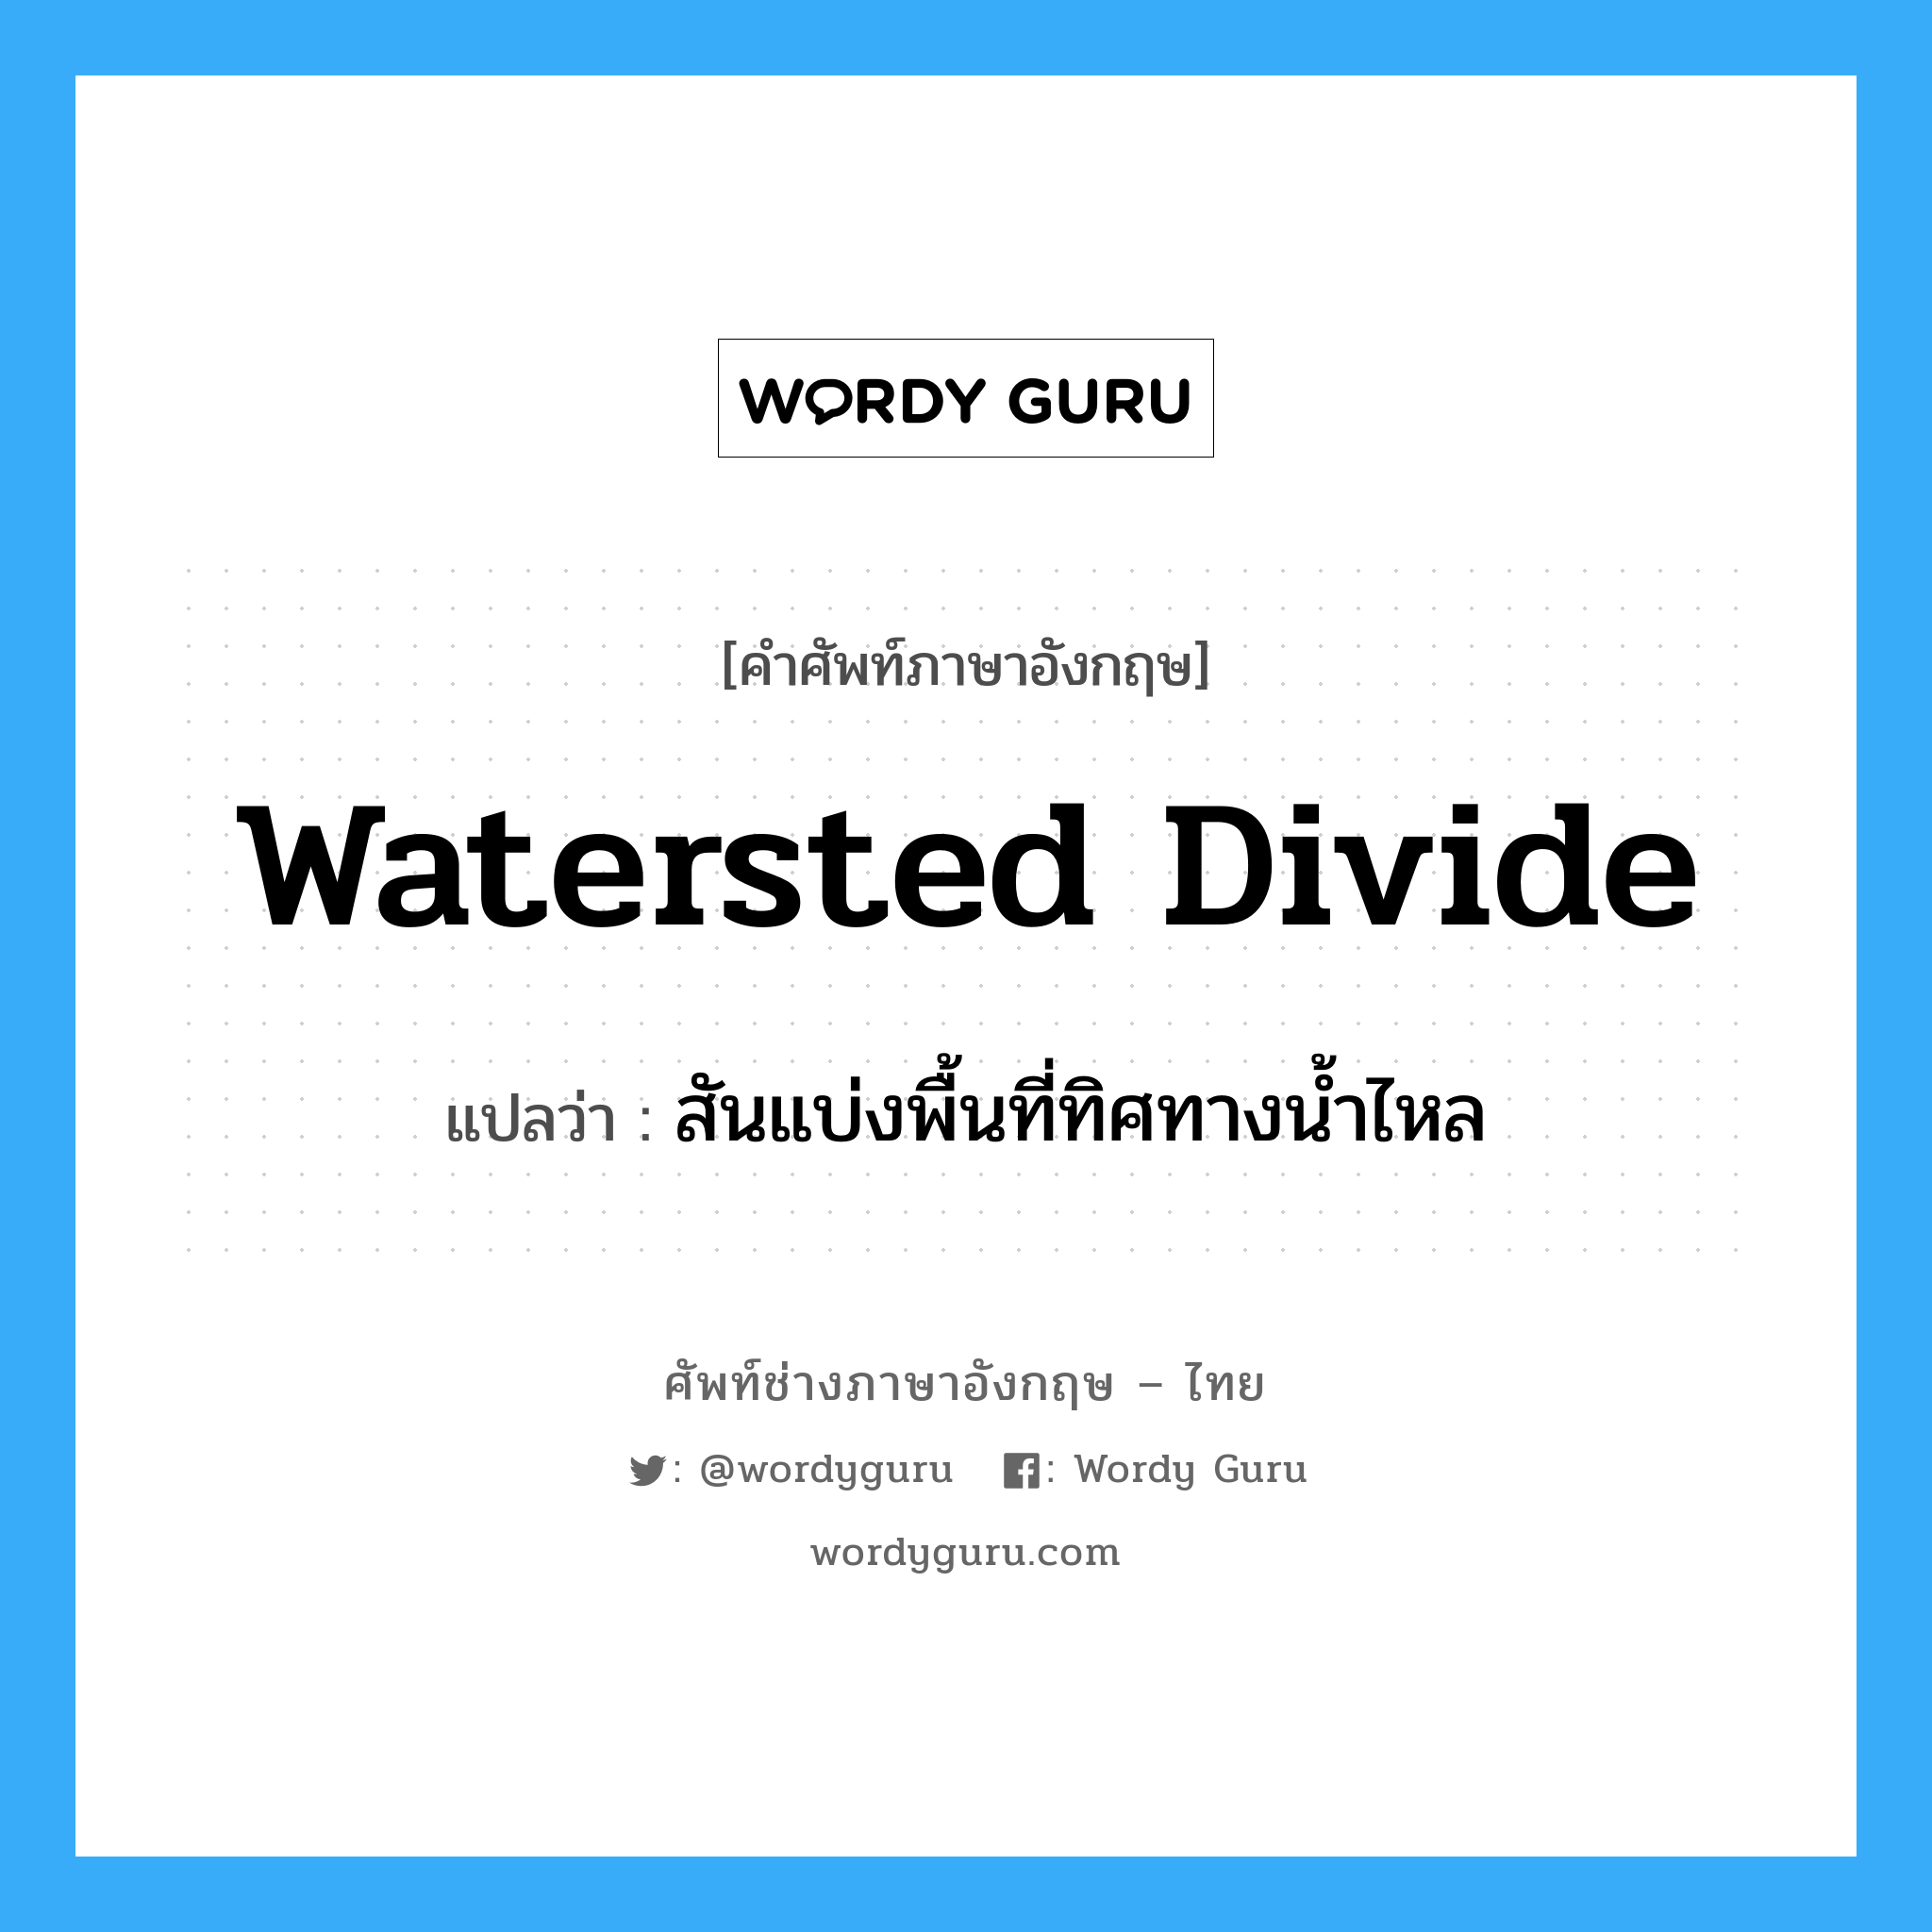 สันแบ่งพื้นที่ทิศทางน้ำไหล ภาษาอังกฤษ?, คำศัพท์ช่างภาษาอังกฤษ - ไทย สันแบ่งพื้นที่ทิศทางน้ำไหล คำศัพท์ภาษาอังกฤษ สันแบ่งพื้นที่ทิศทางน้ำไหล แปลว่า watersted divide